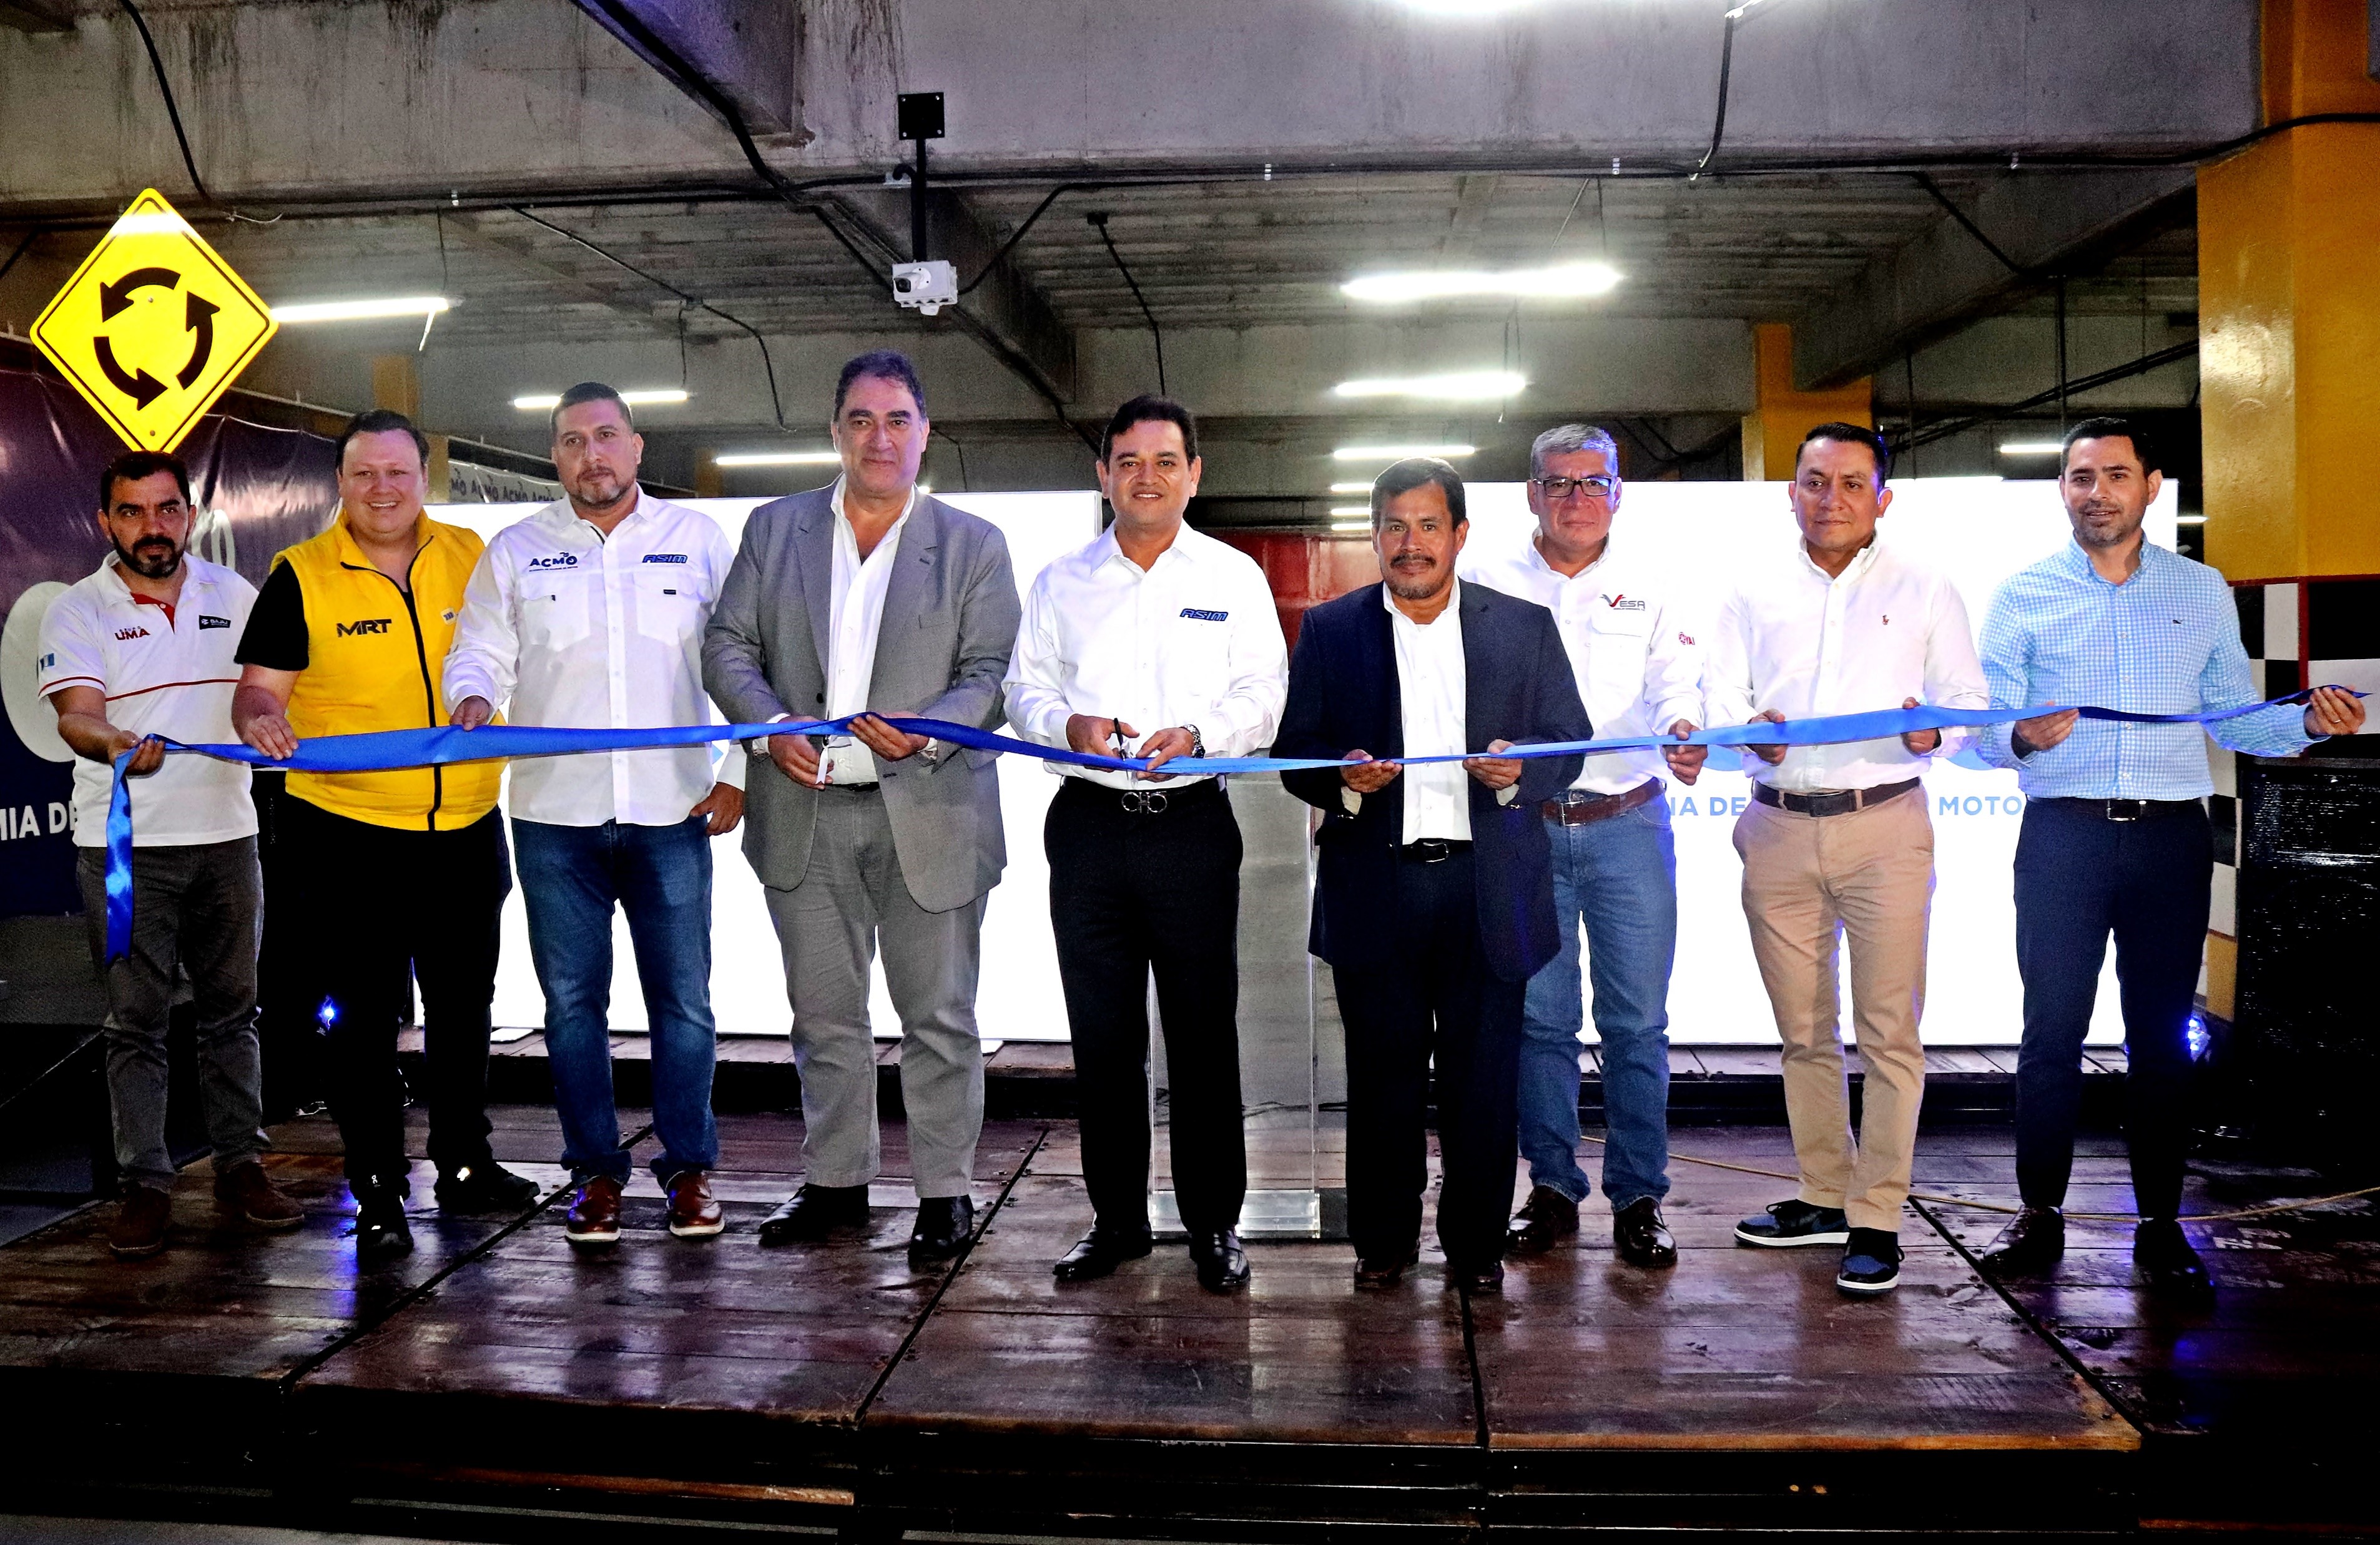 La Asociación de Importadores de Motocicletas inaugura ACMO, una academia de manejo que fortalece la seguridad vial en Guatemala